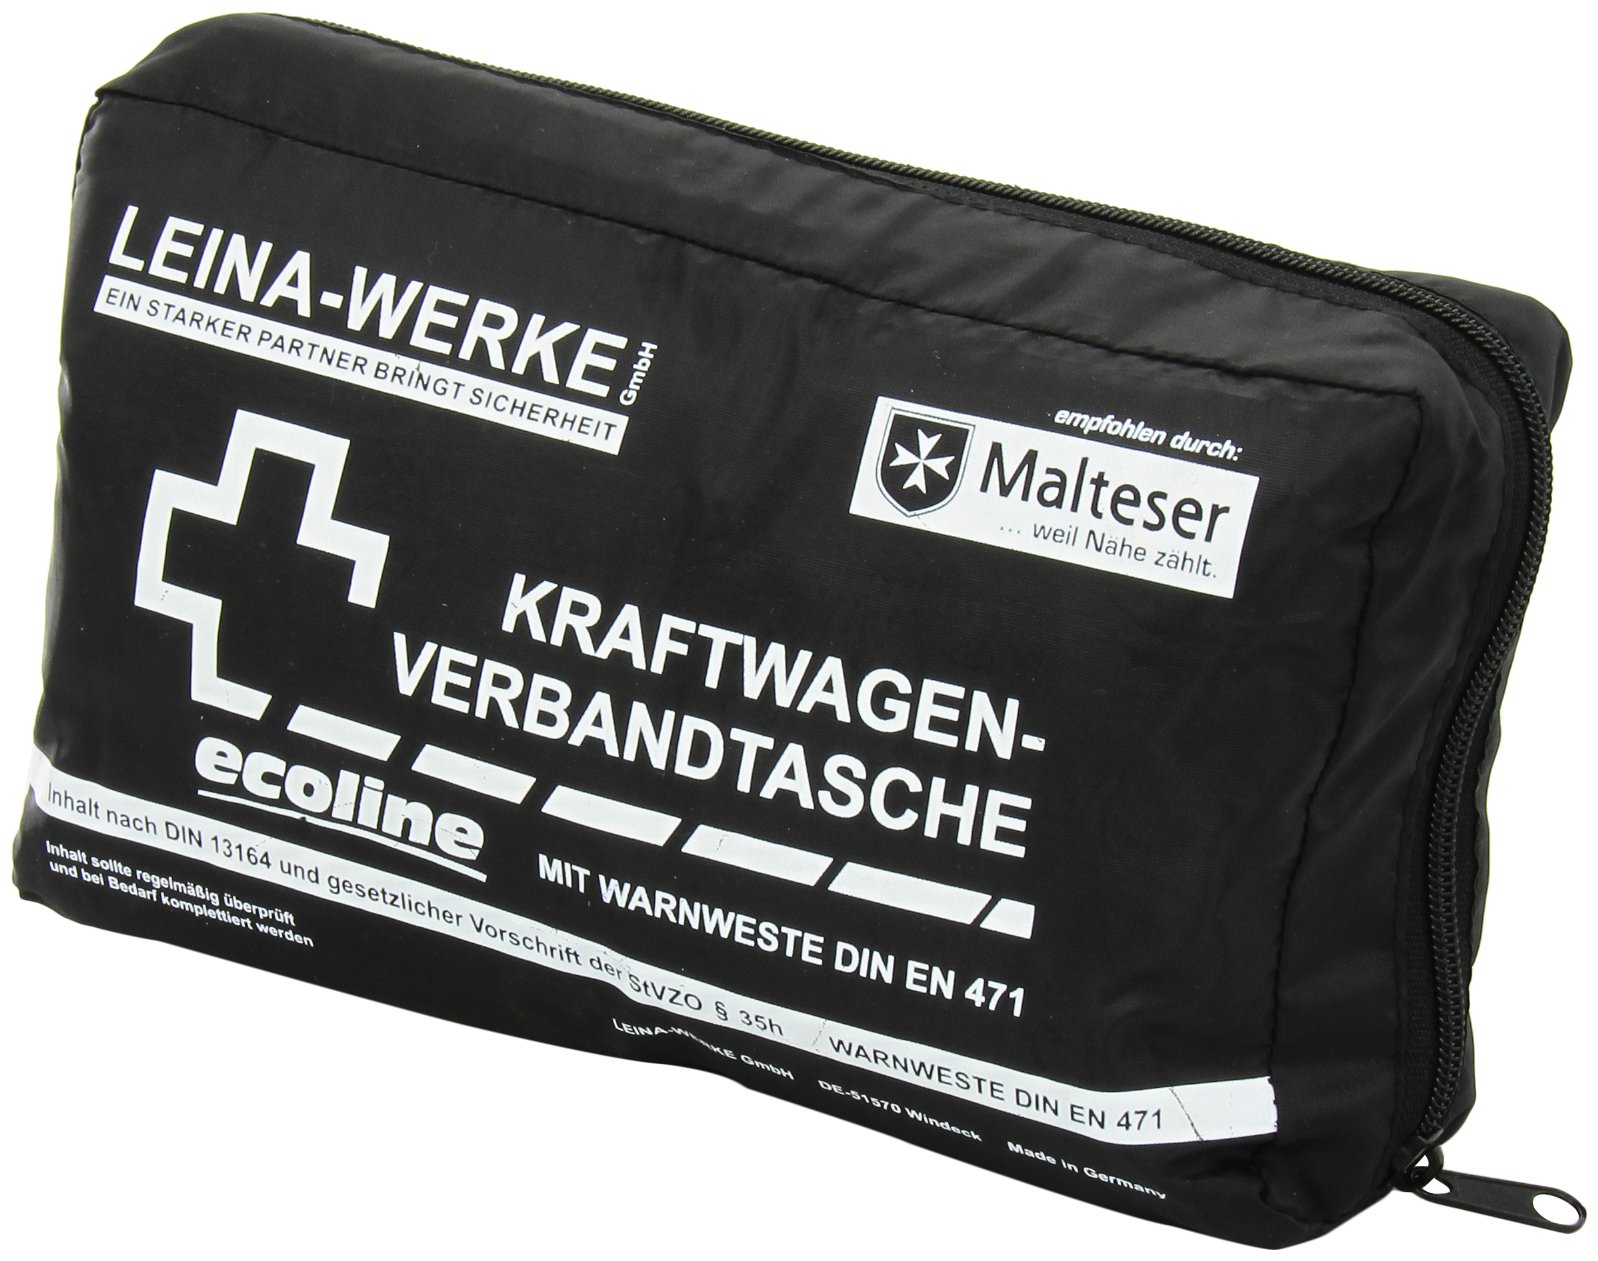 Leina-Werke 11050 KFZ-Verbandtasche Compact mit Warnweste Ecoline ohne Klett, Schwarz/Weiß von LEINA-WERKE